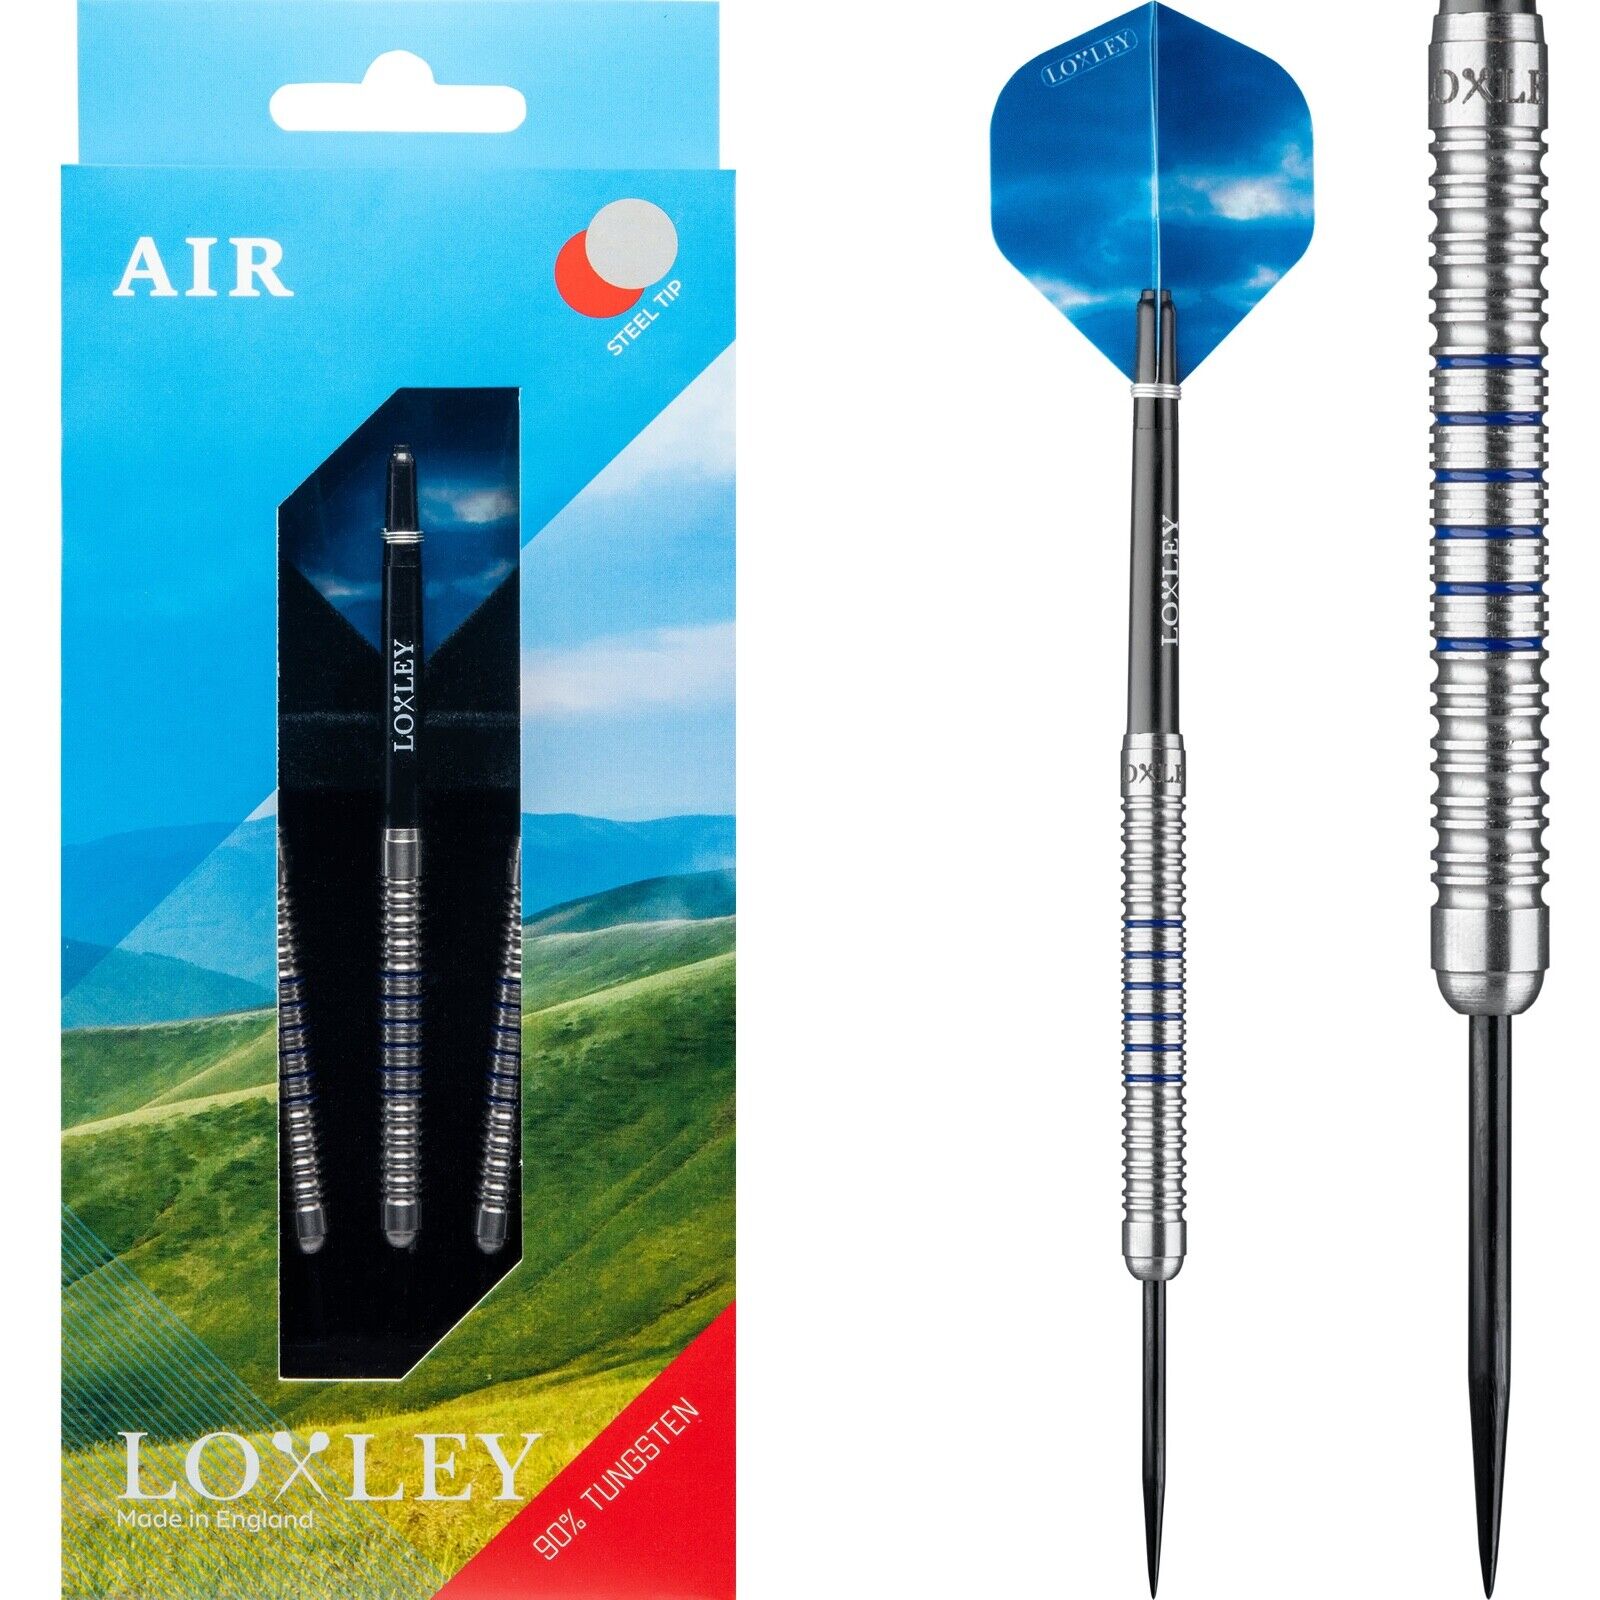 Air darts